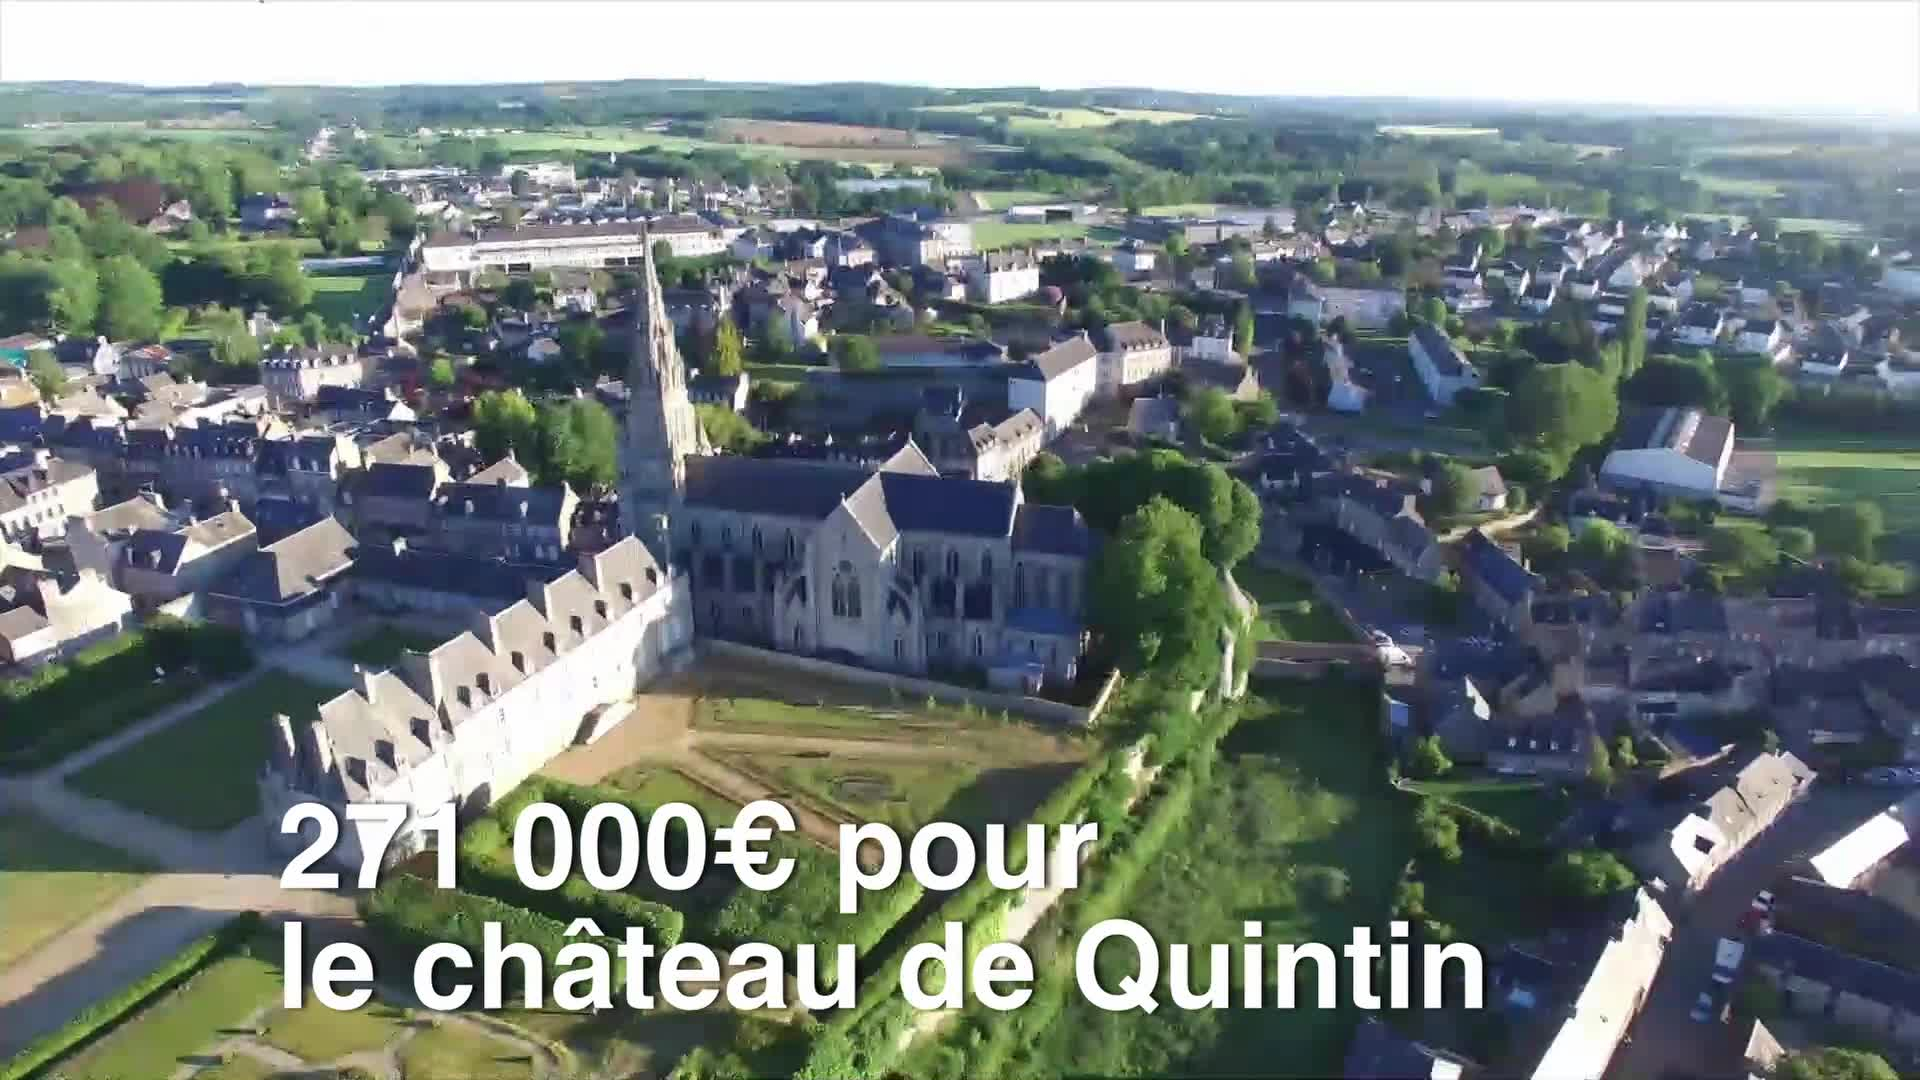 Loto du patrimoine : 271 000€ pour le château de Quintin  (Tébéo-TébéSud)